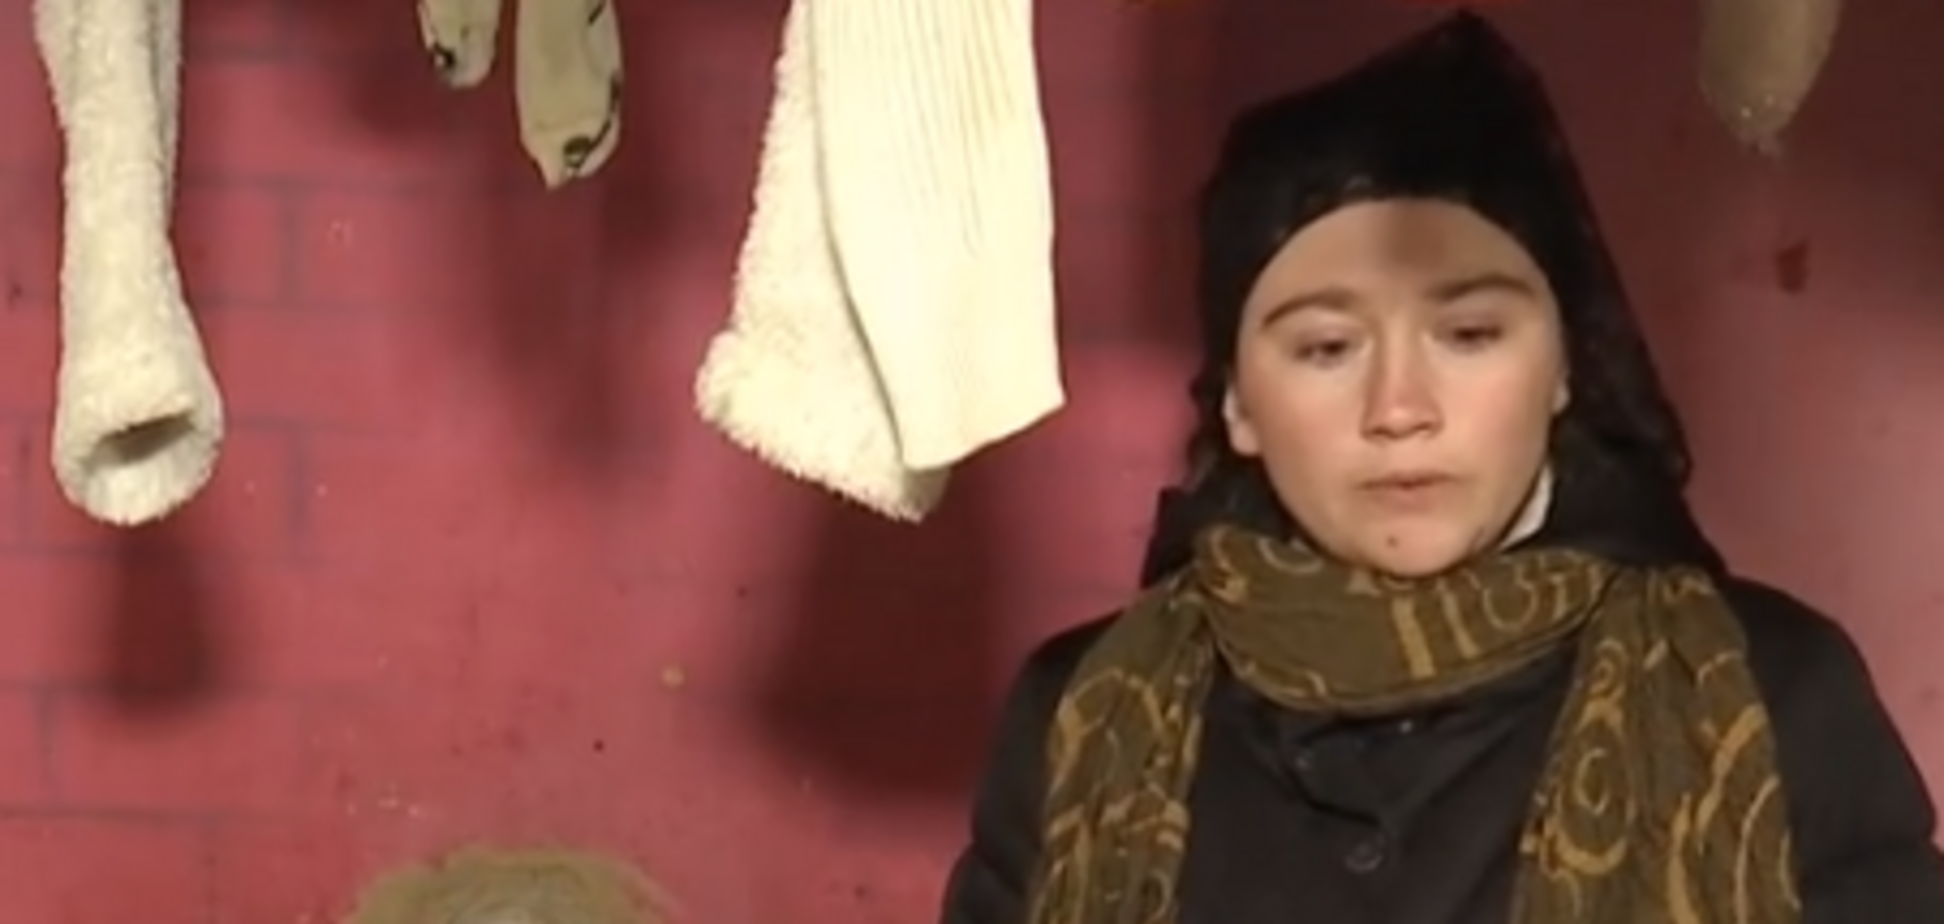  Кожа полопалась, глаза закрыли бинтами: смерть малыша на Киевщине вызвала скандал